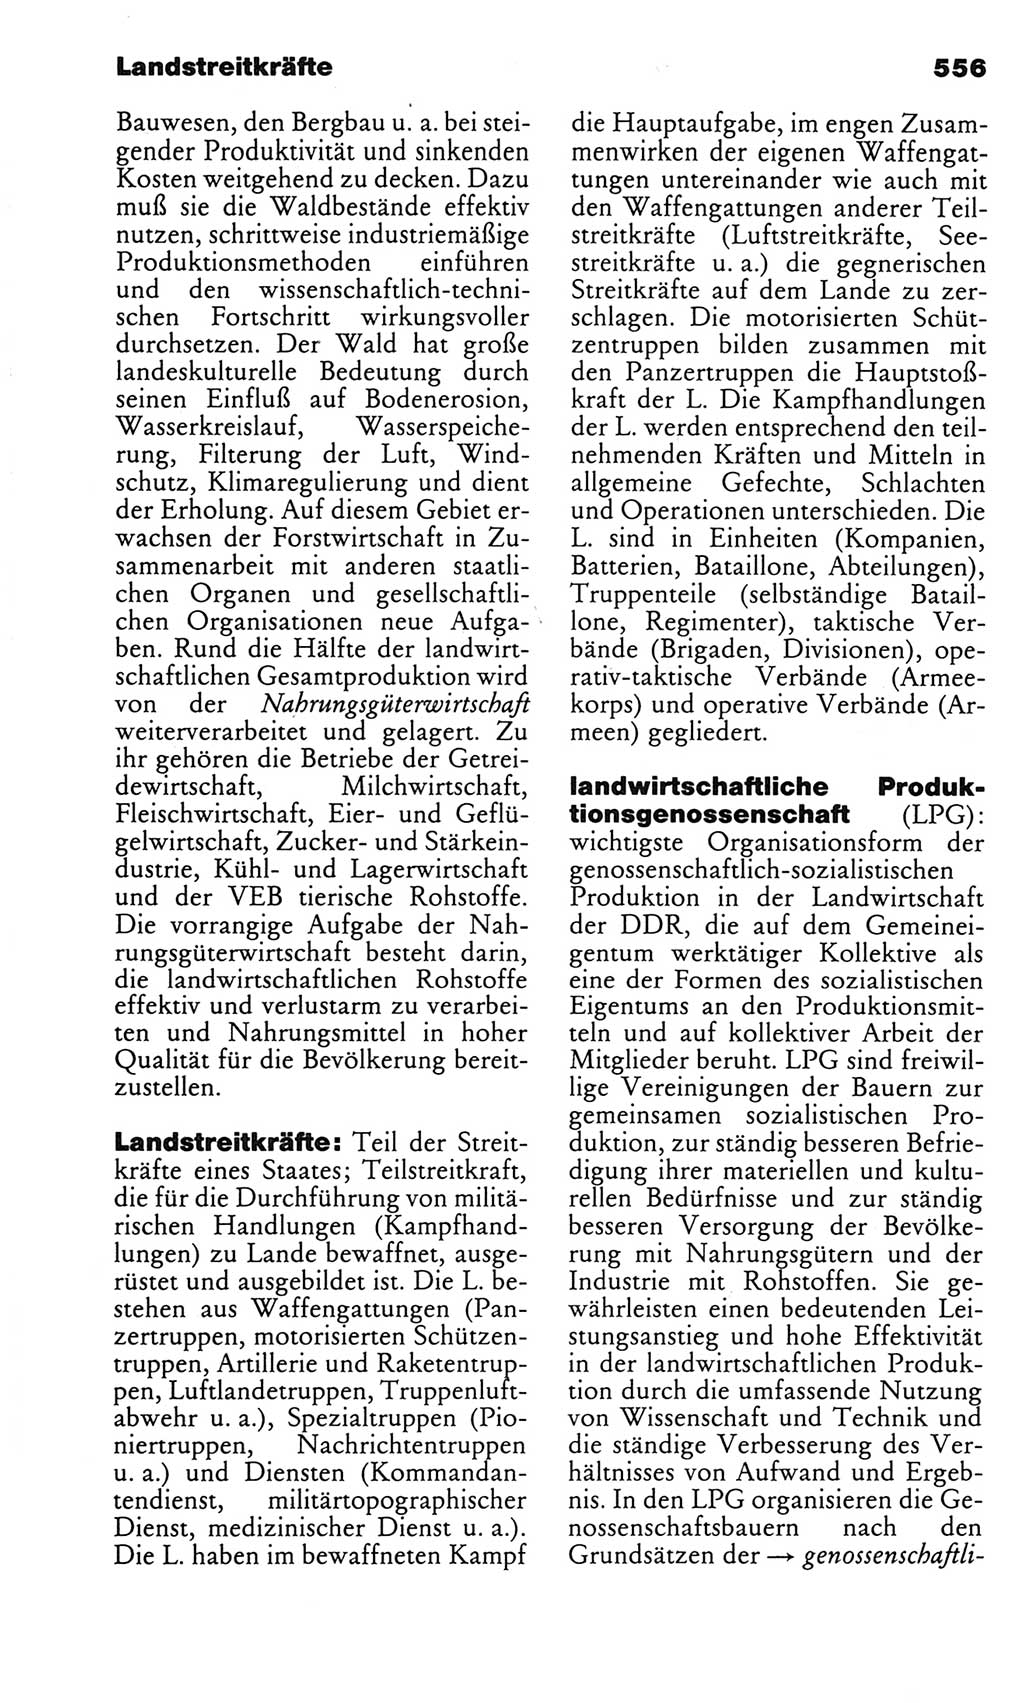 Kleines politisches Wörterbuch [Deutsche Demokratische Republik (DDR)] 1983, Seite 556 (Kl. pol. Wb. DDR 1983, S. 556)